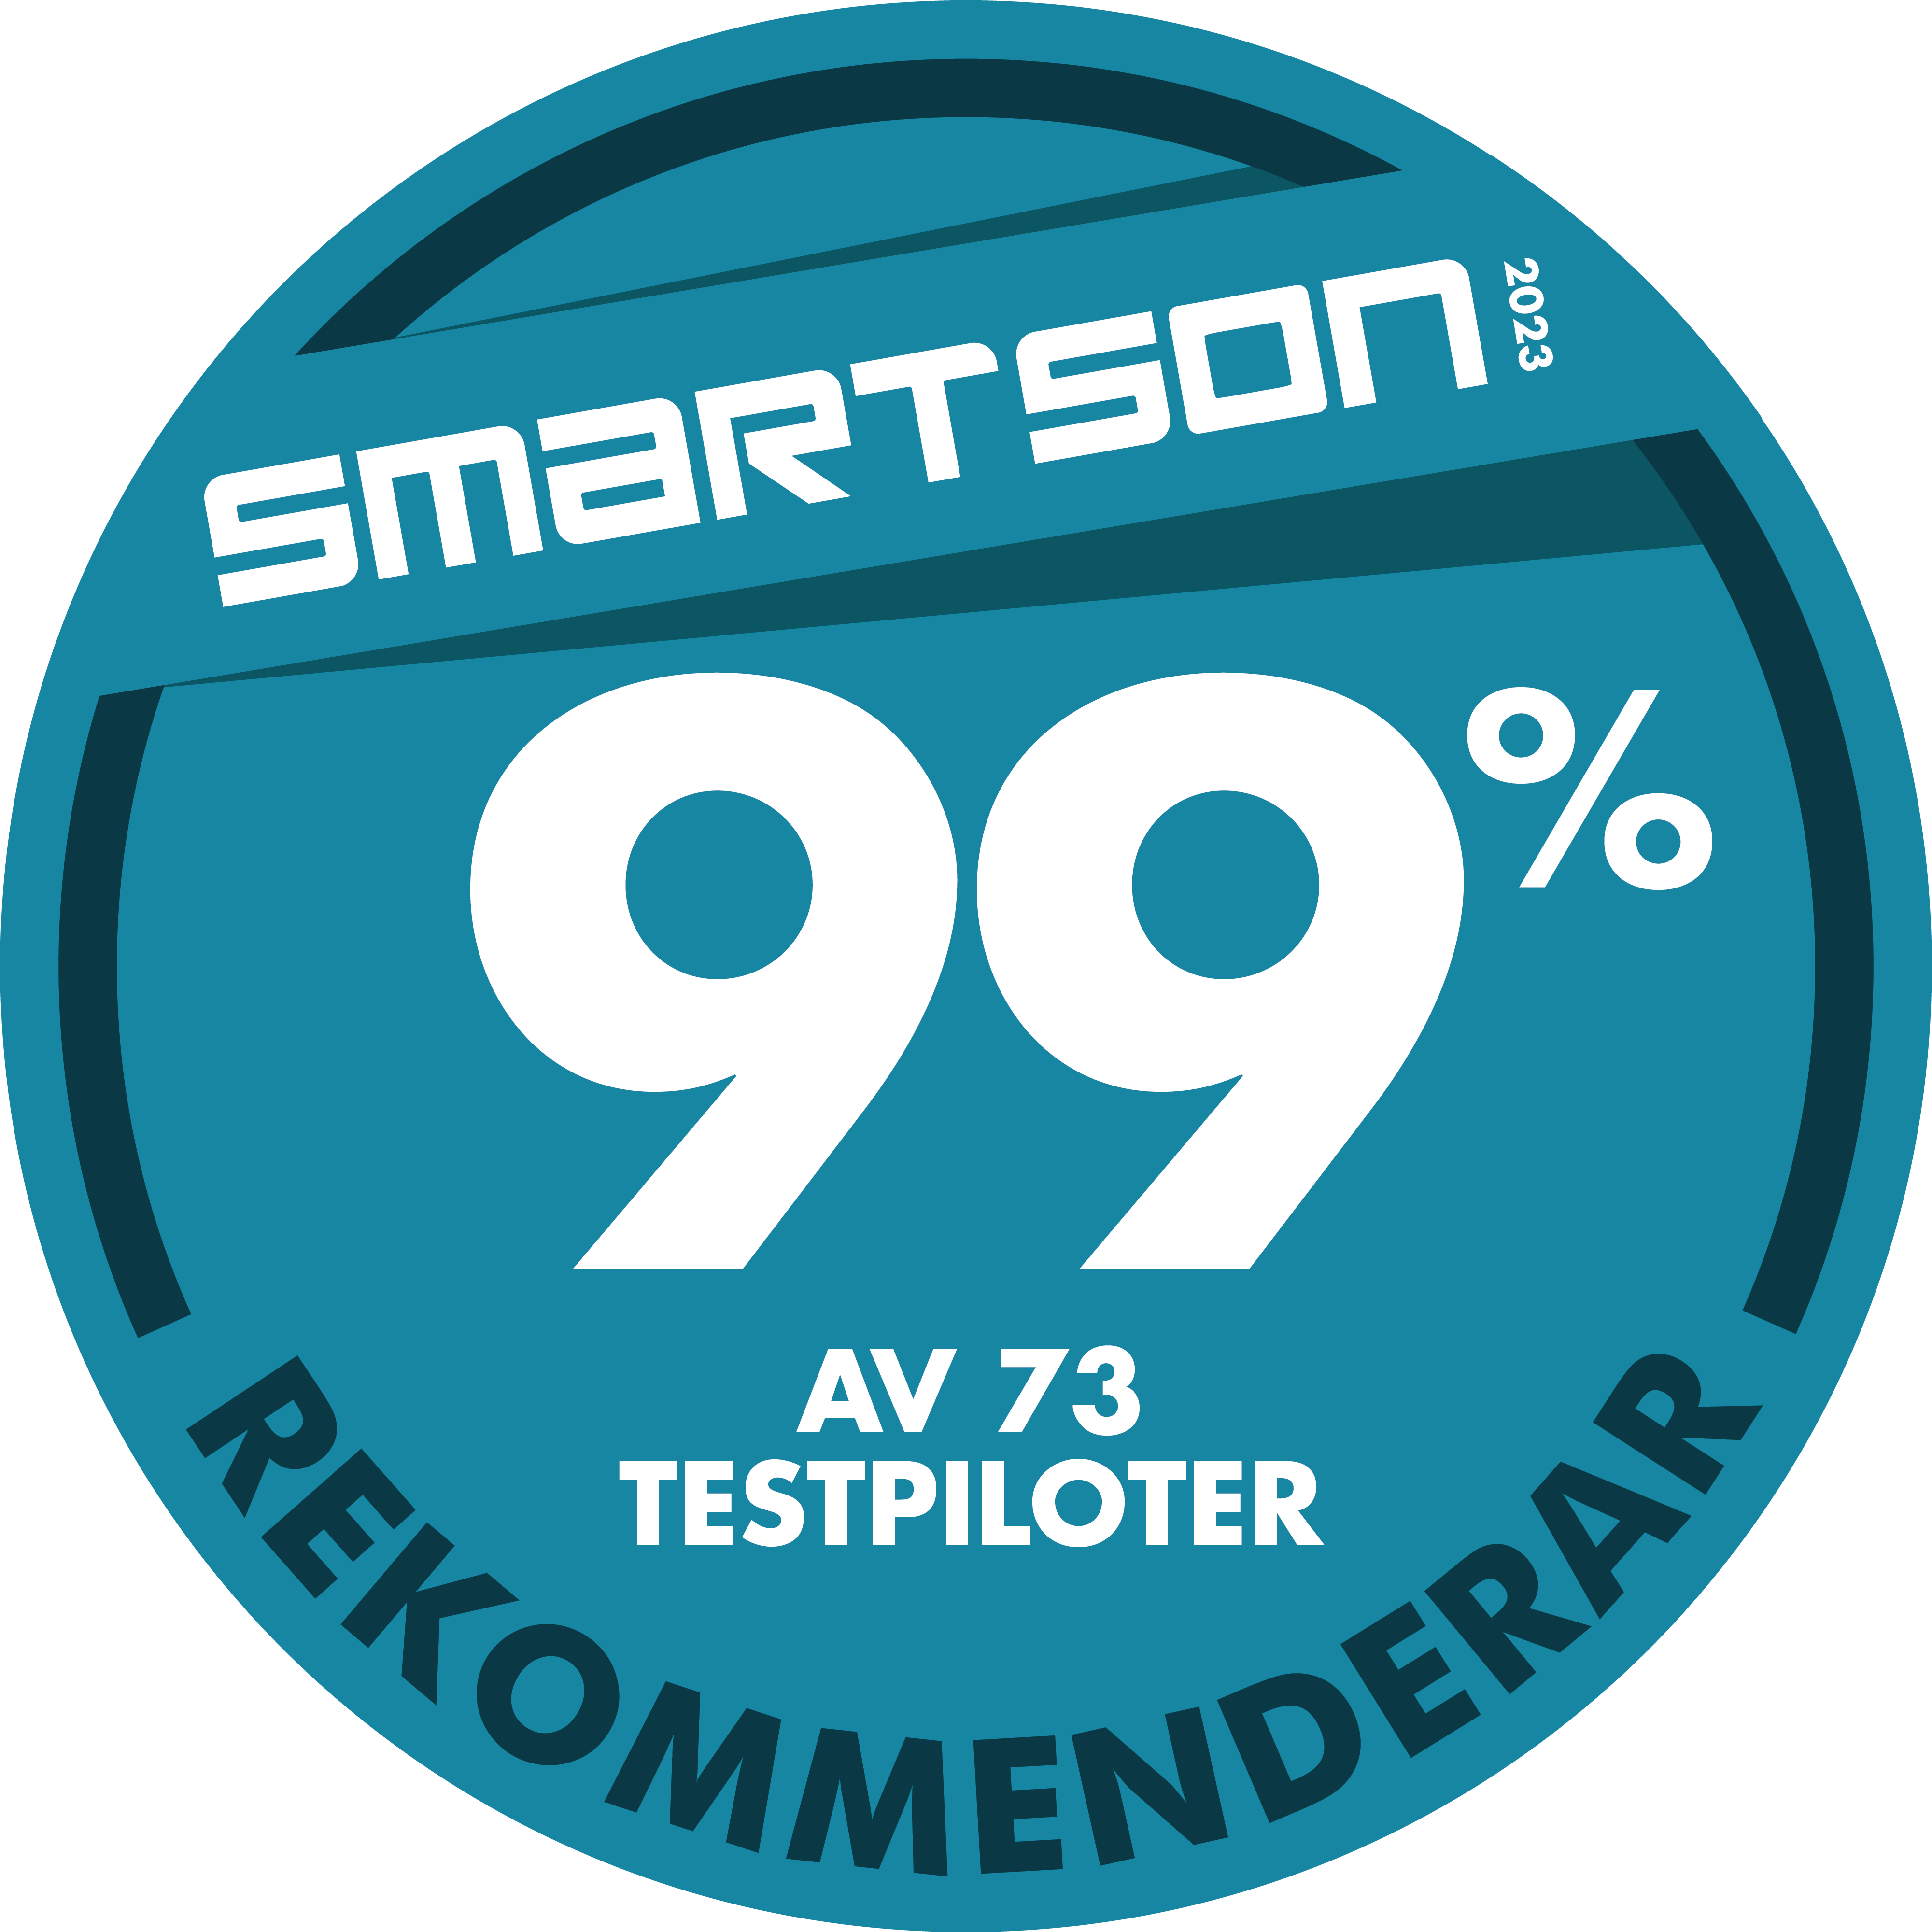 Smartson Badge - 99% Av 73 Testpiloter